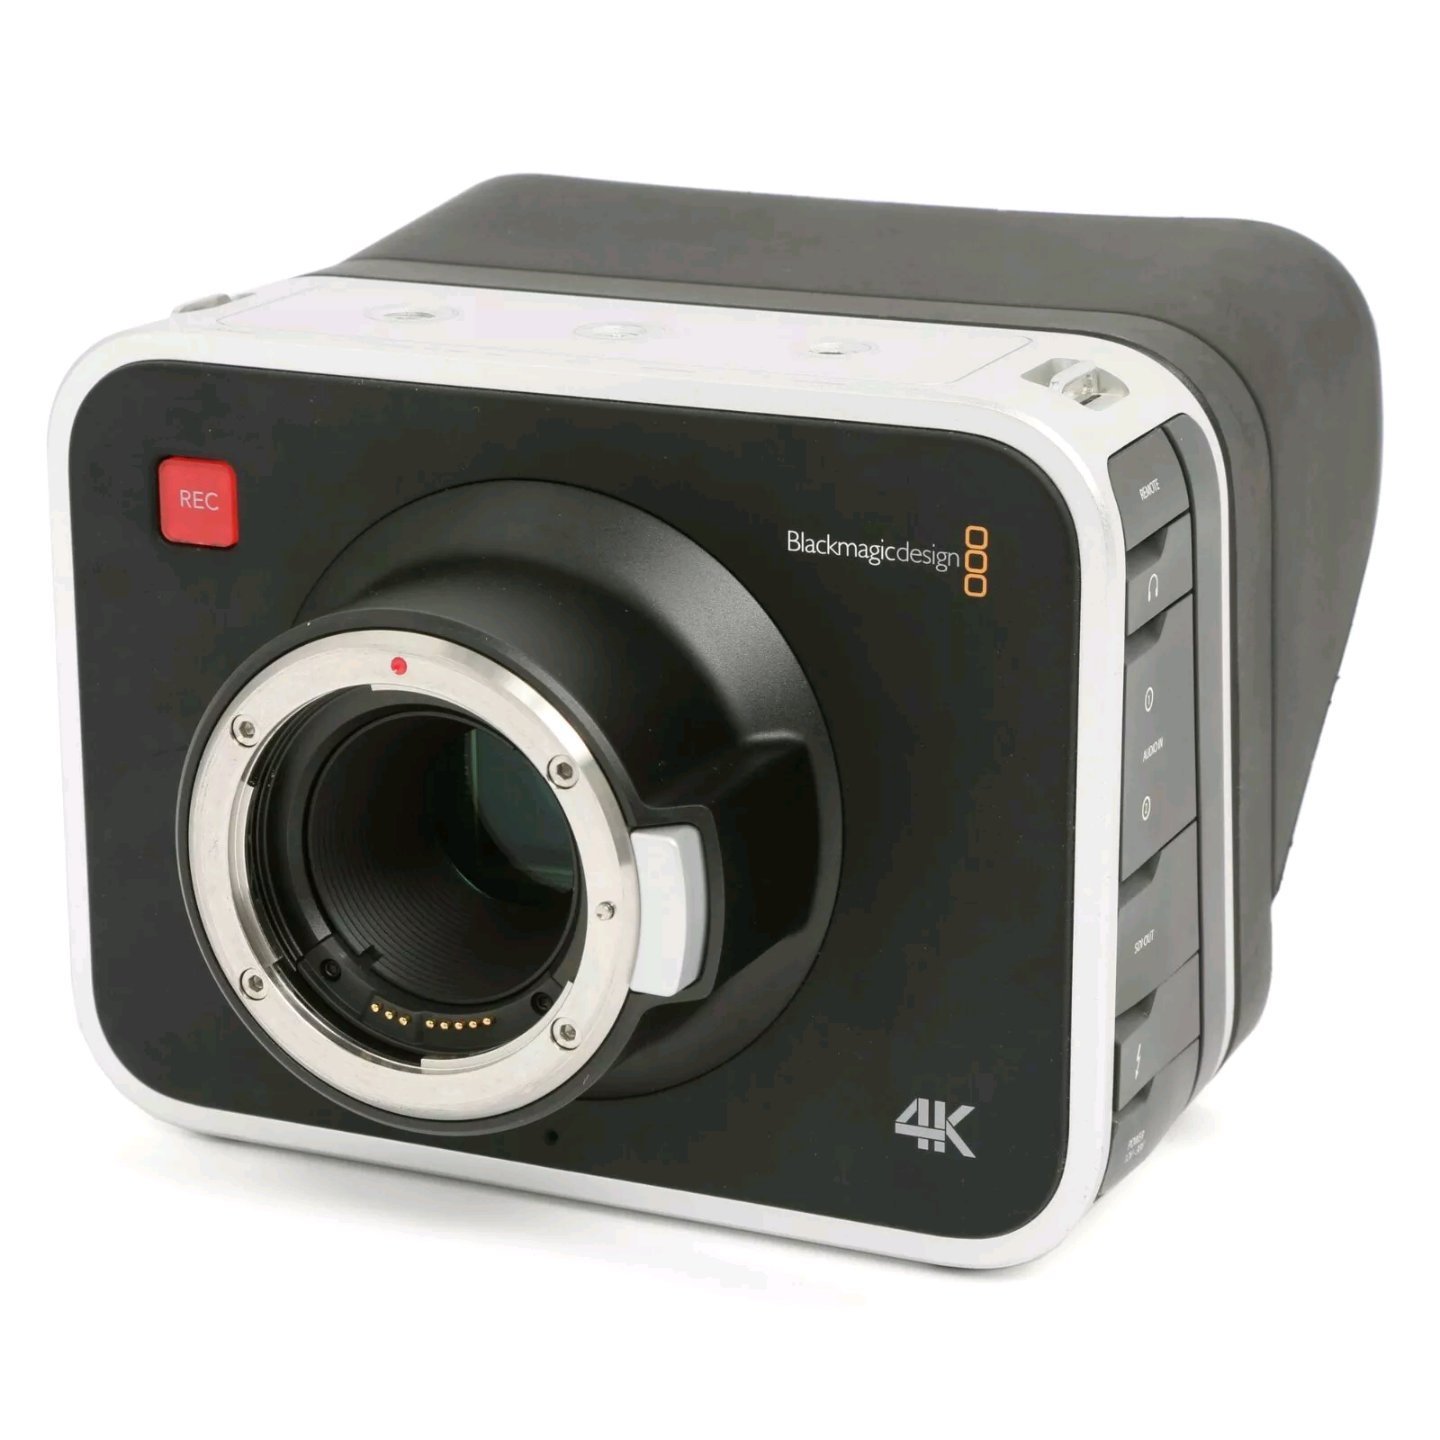 ブラックマジックデザイン Blackmagic Production Camera 4K EF CINECAMPROD4KEF 業務用ビデオカメラの商品画像